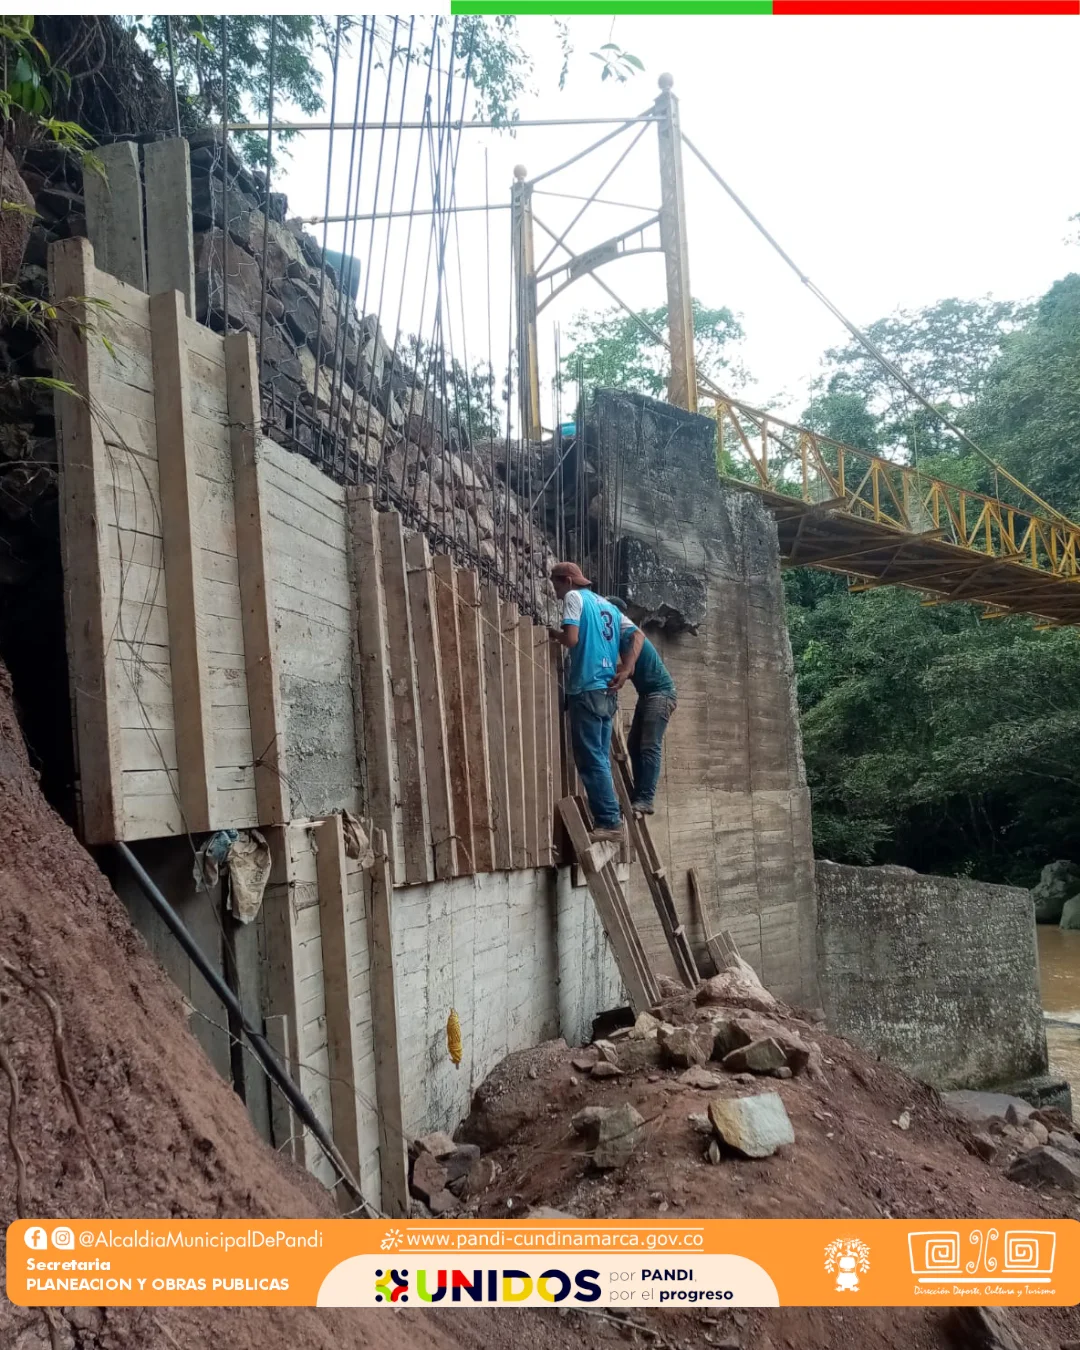 Mantenimiento y restauración del Puente José Vicente Concha de Pandi